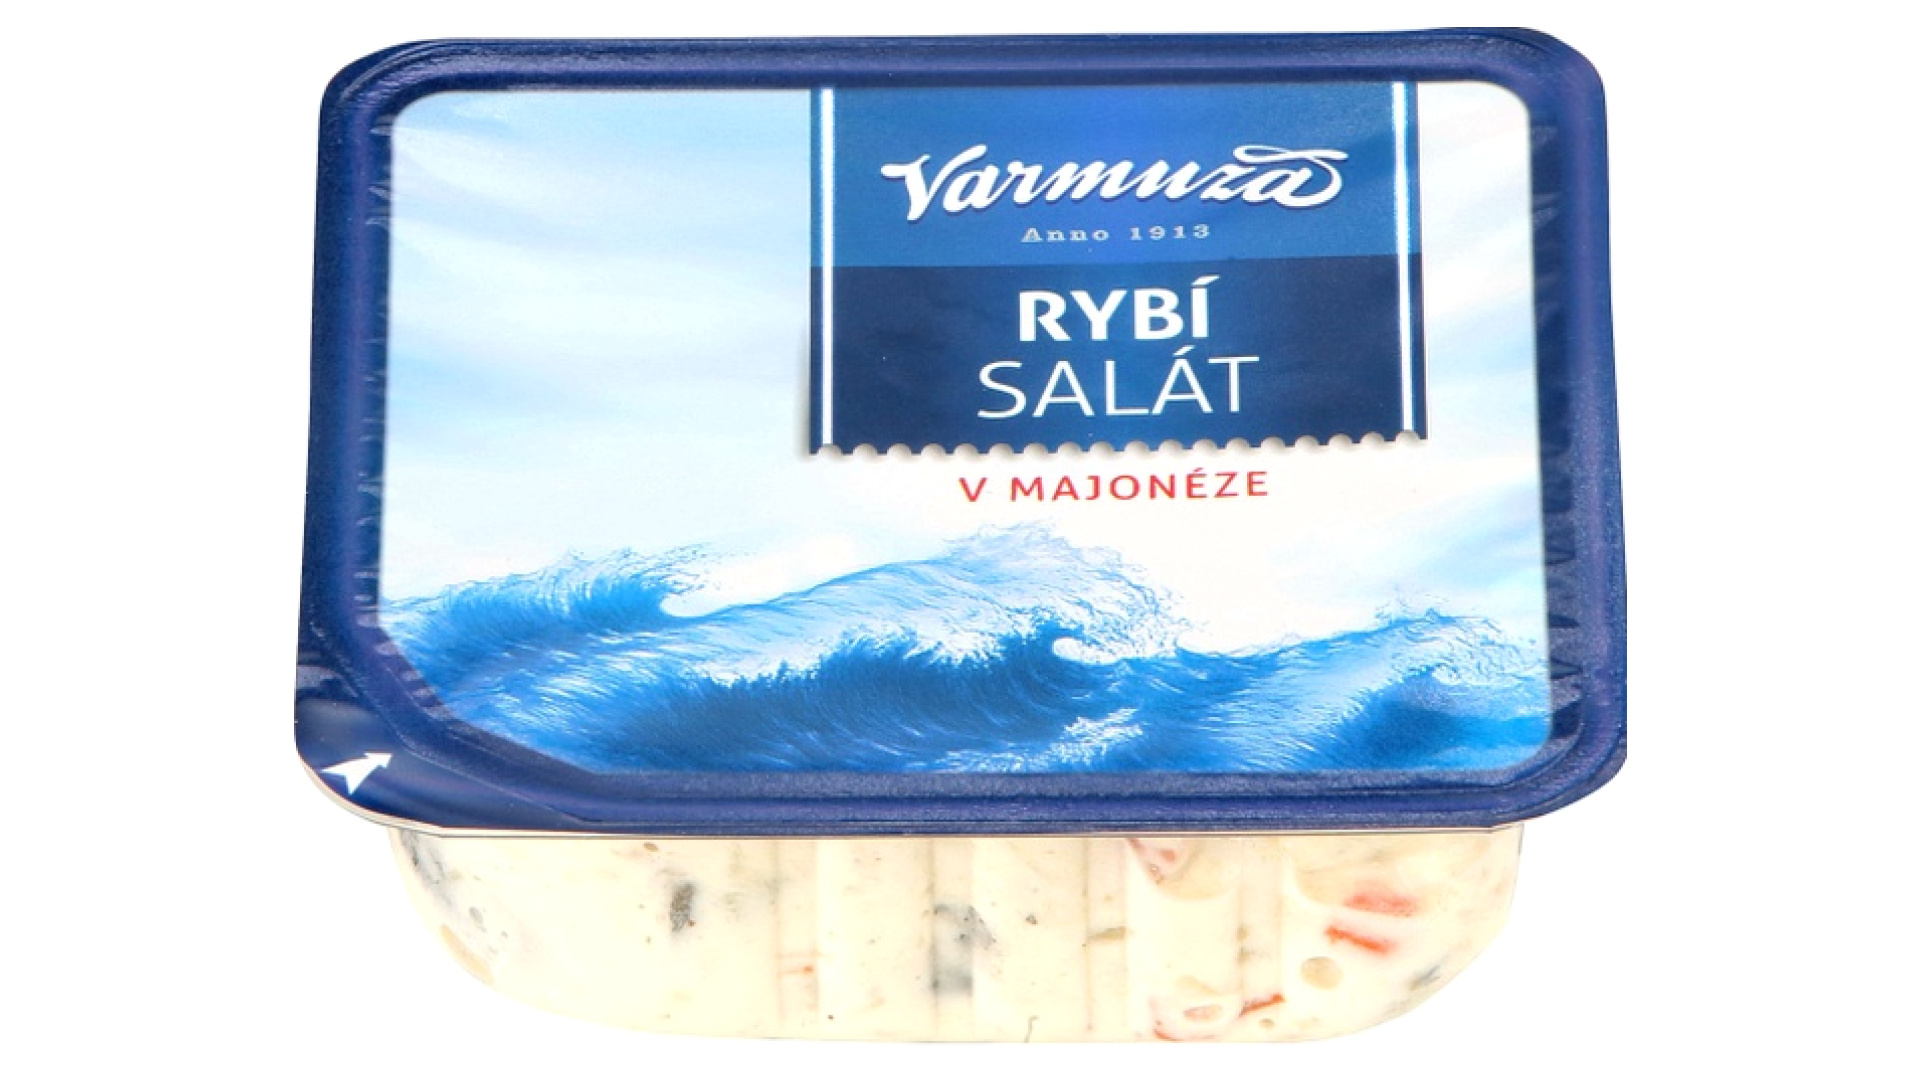 Salát rybí v majonéze Varmuža levně Kupi cz